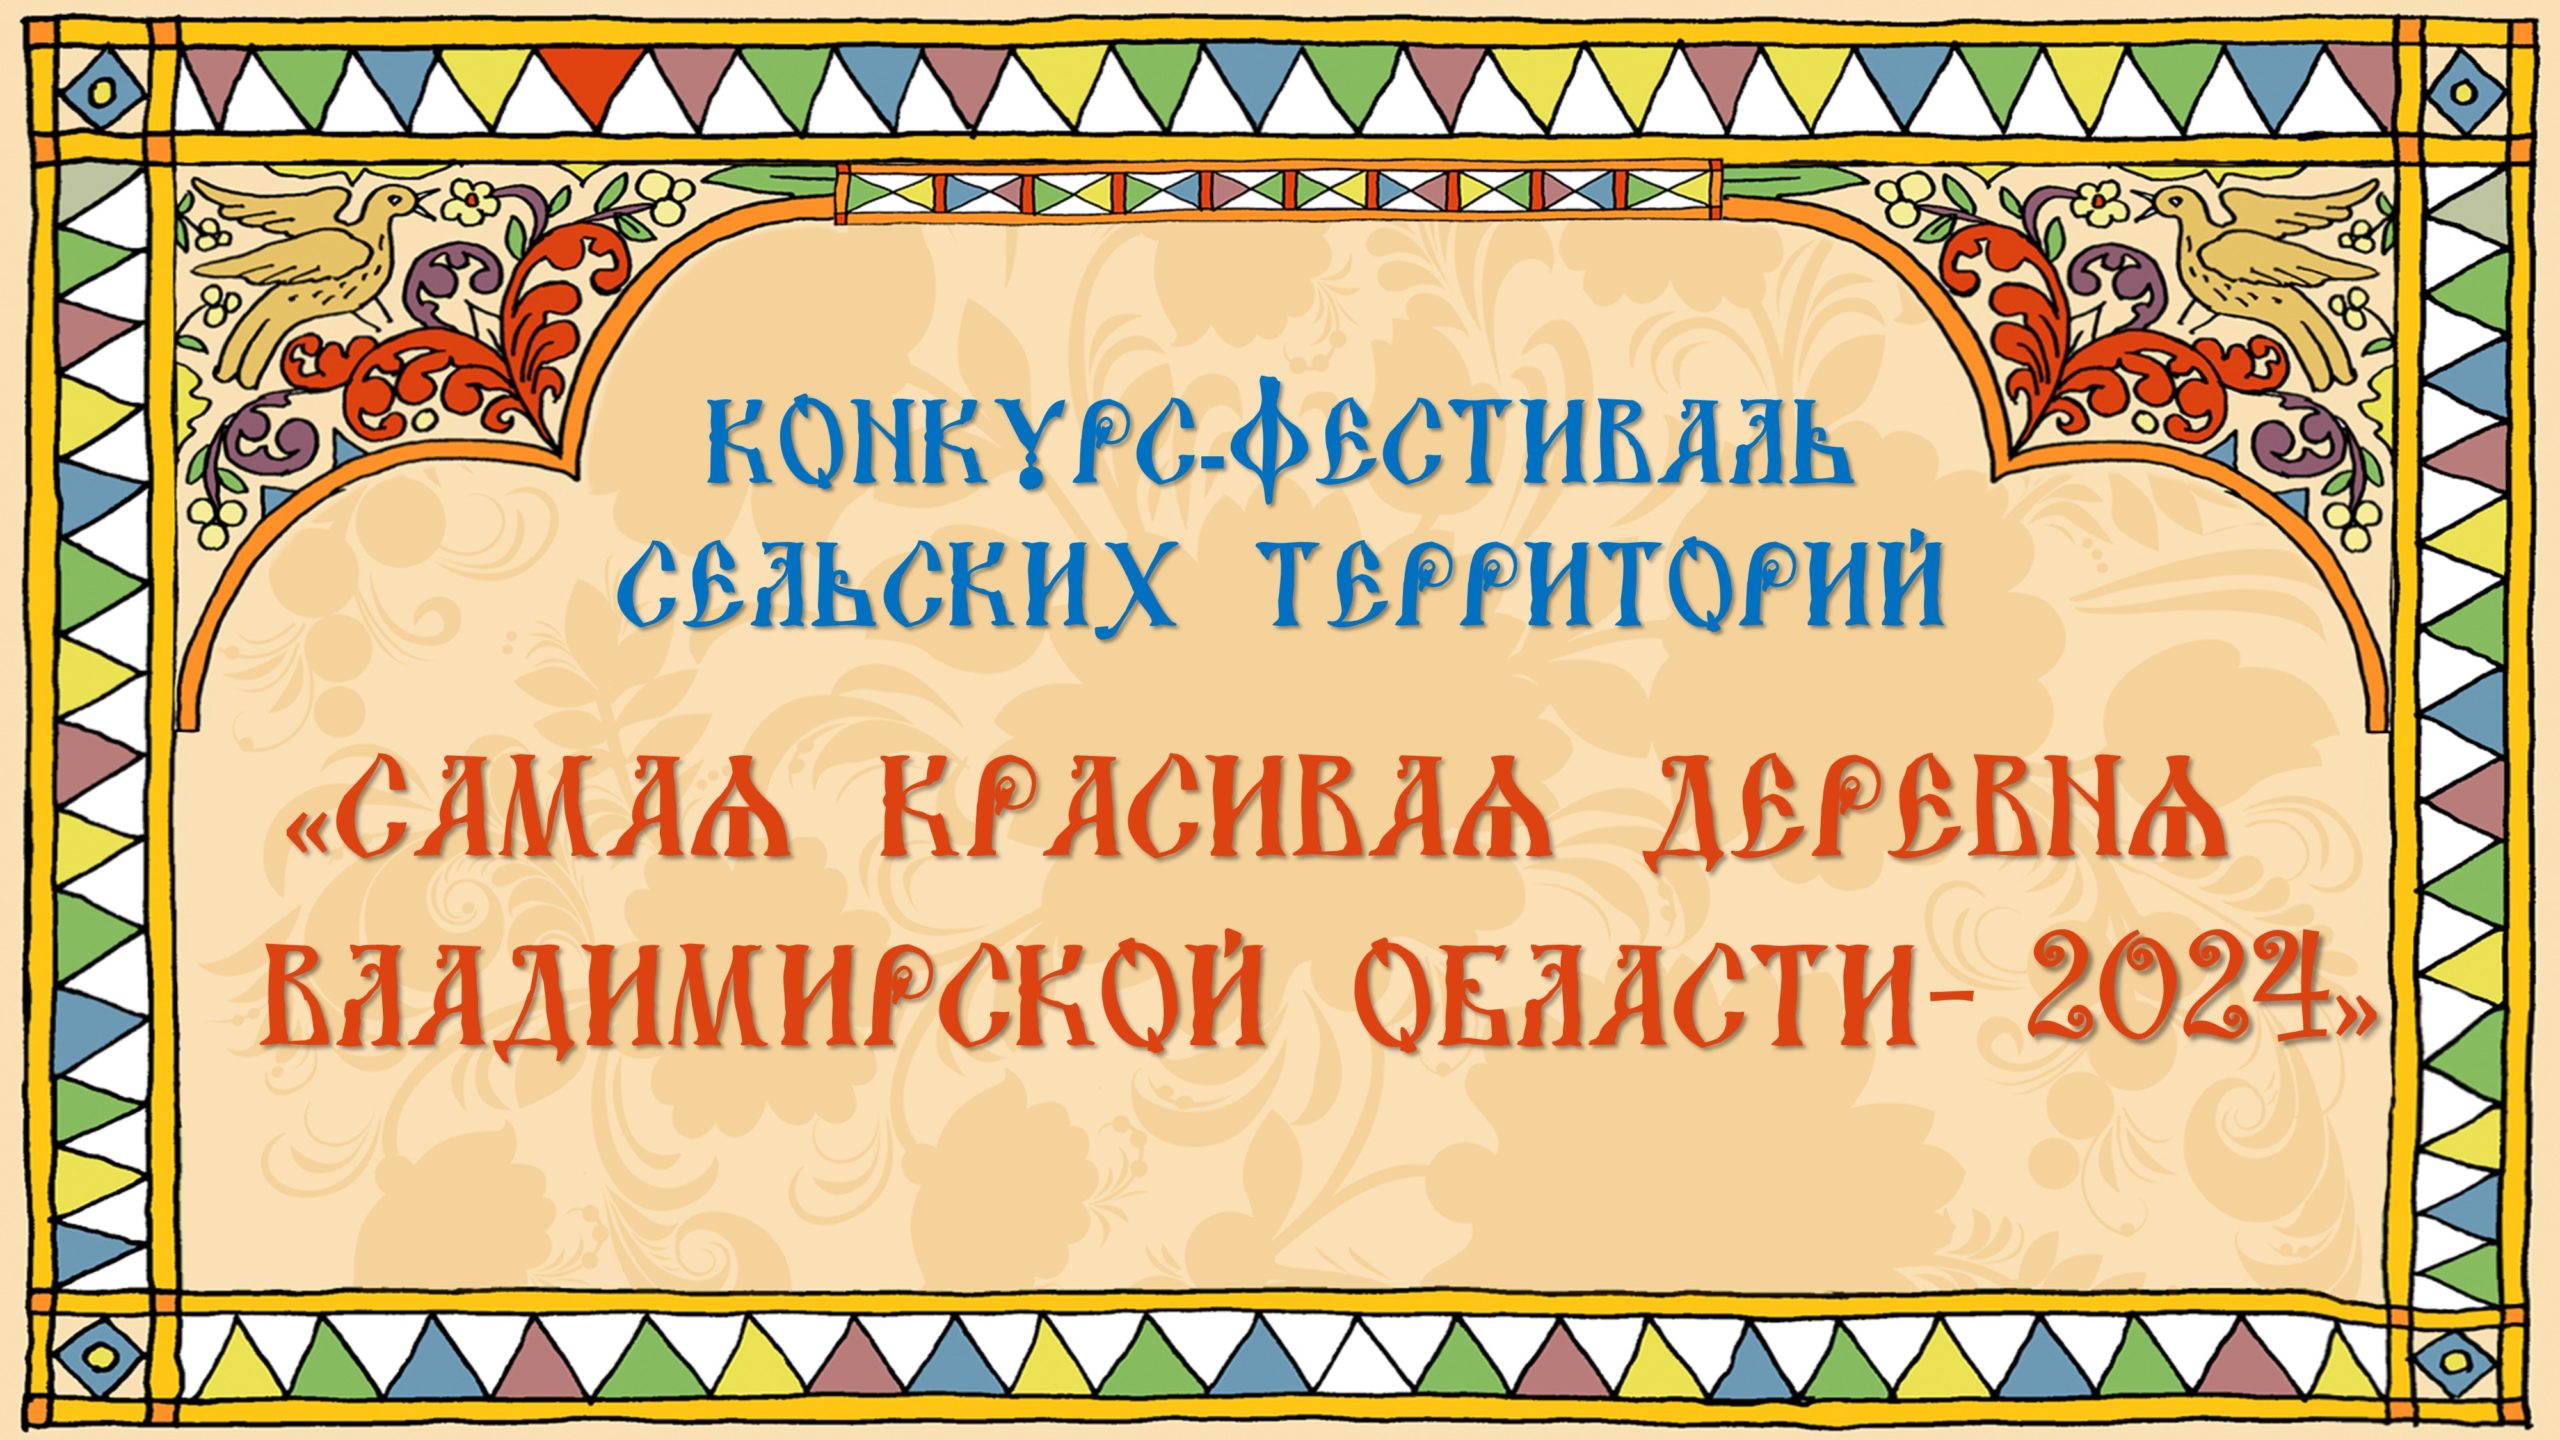 Конкурс Фестиваль сельских территорий во Владимирской области 2024 — Официальный сайт